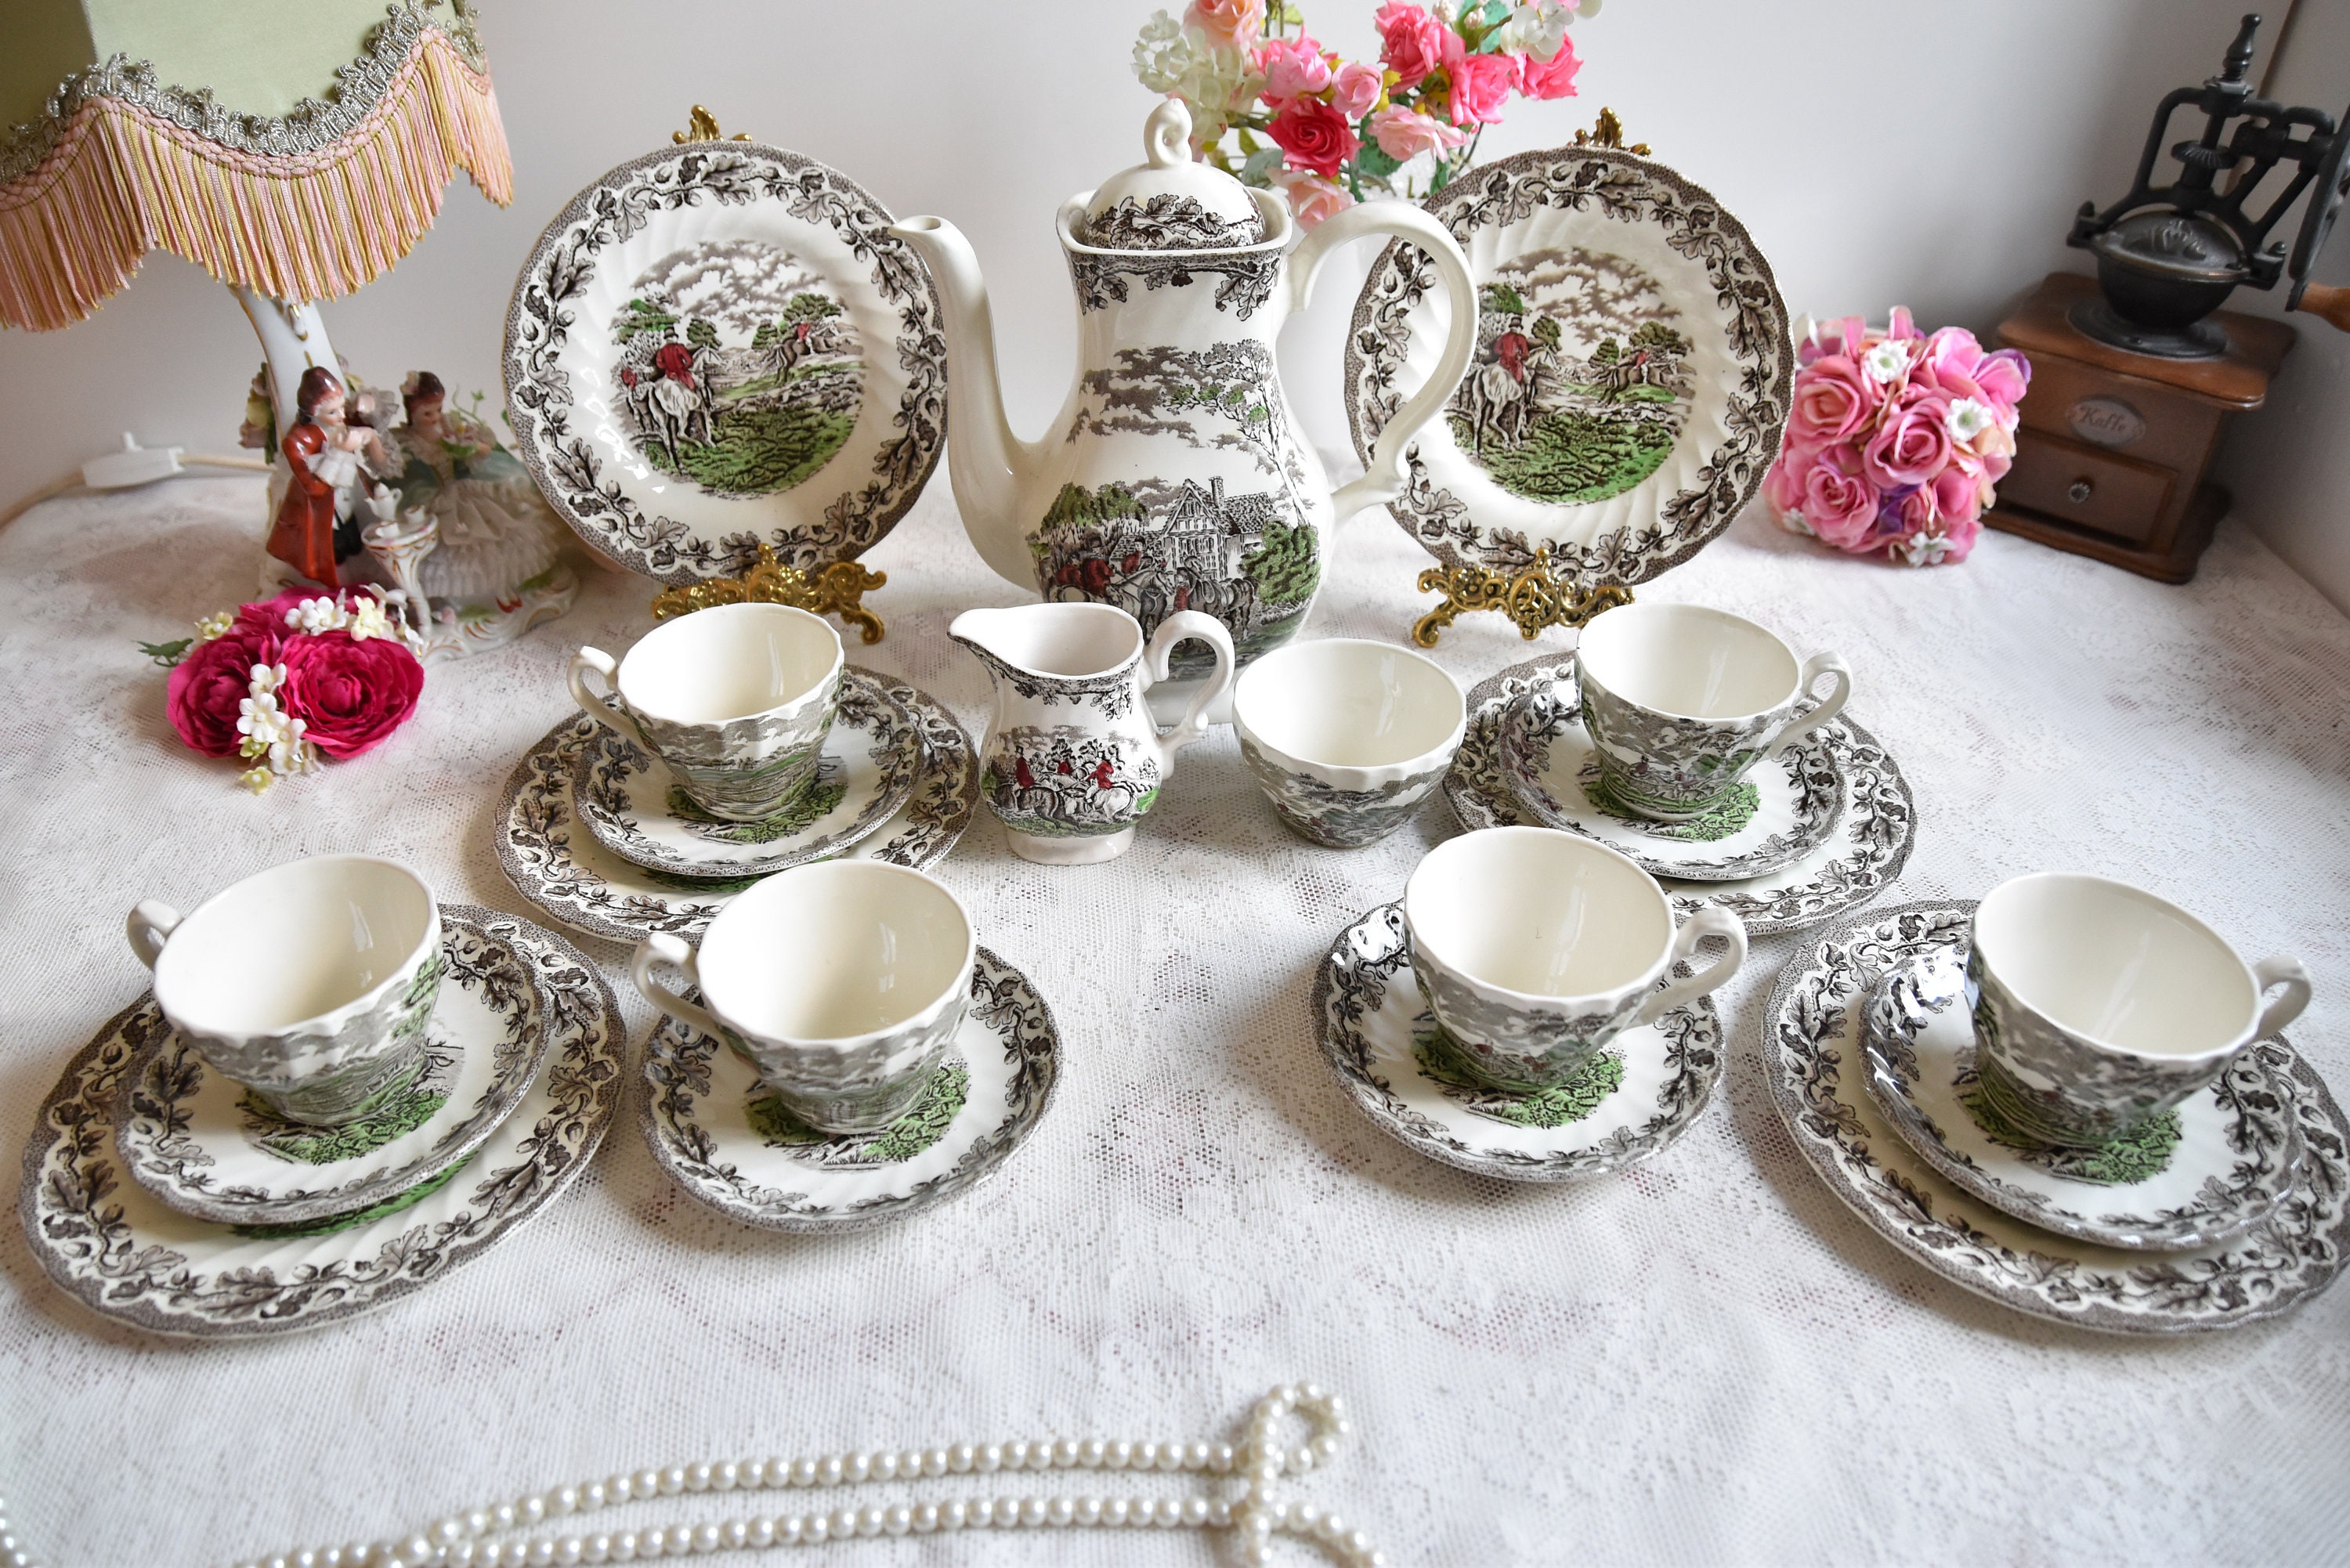 Teeservice Im Europäischen Stil FJSC Britische Porzellan-Teesets Hochzeitsteeservice Für Erwachsene Blumenmeer A Vintage-Blumen-China-Kaffeeset Kaffeeset Im Royal-Stil 